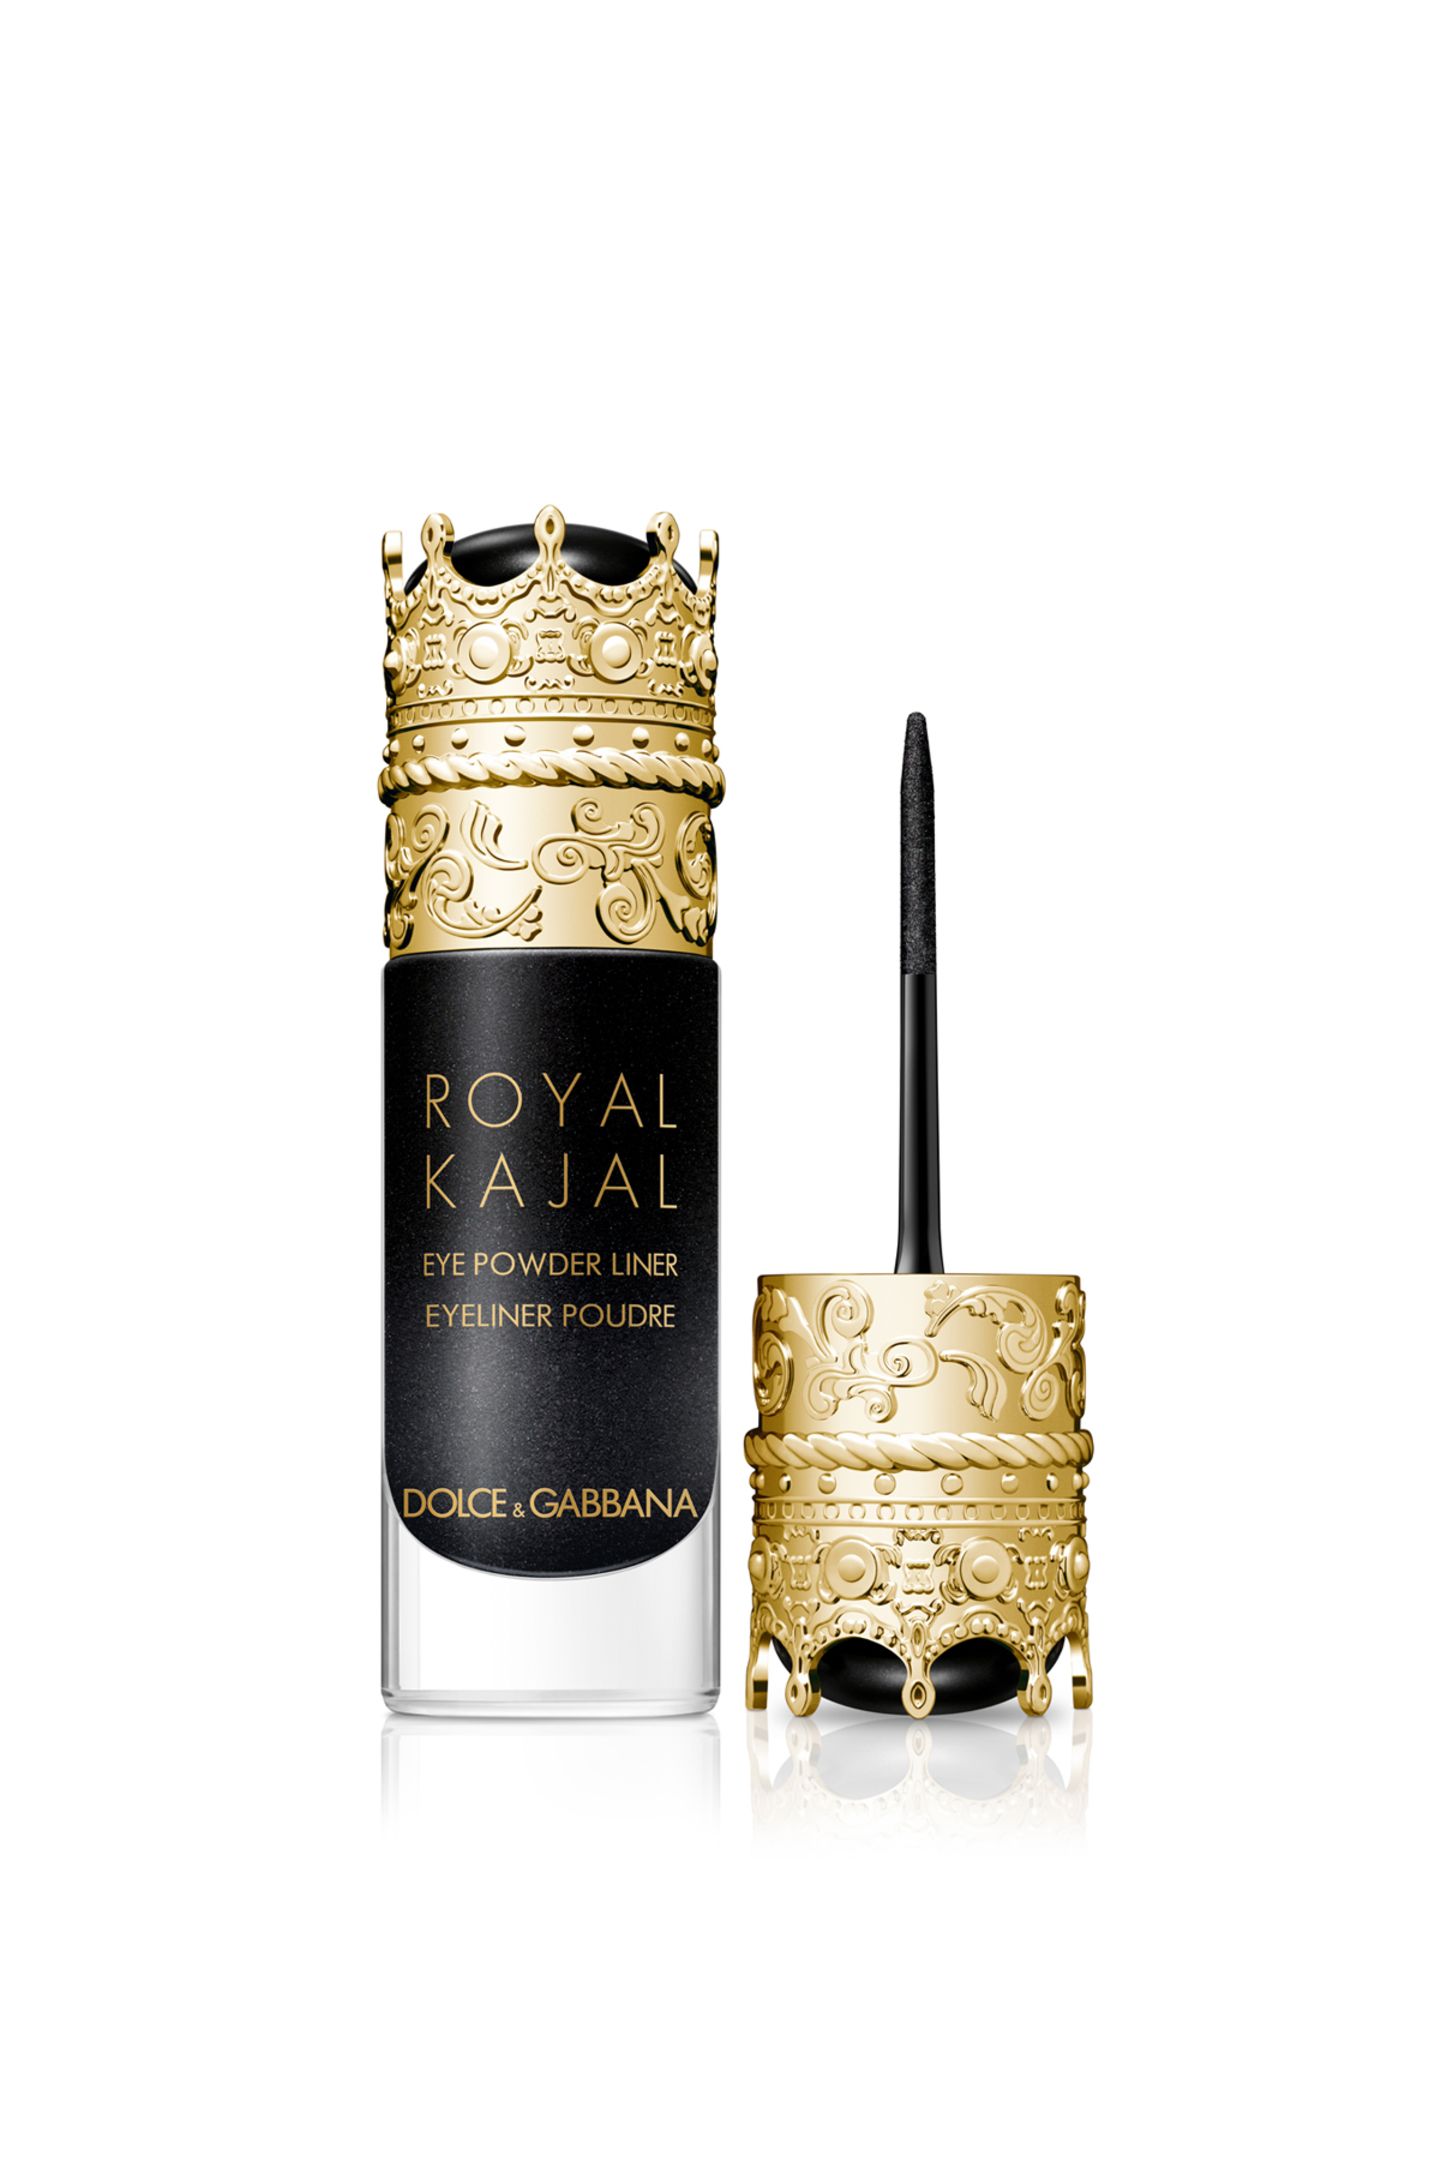 Mit diesem königlichen Beauty-Produkt können Sie nicht nur einen Fan der Royals glücklich machen, sondern auch jeden Beauty-Junkie. Der "Royal Kajal" von Dolce & Gabbana Beauty eignet sich nämlich perfekt für ganz unterschiedliche Styles dank eines ultrapräzisen Applikators. Exklusiv über Douglas, ca. 55 Euro.